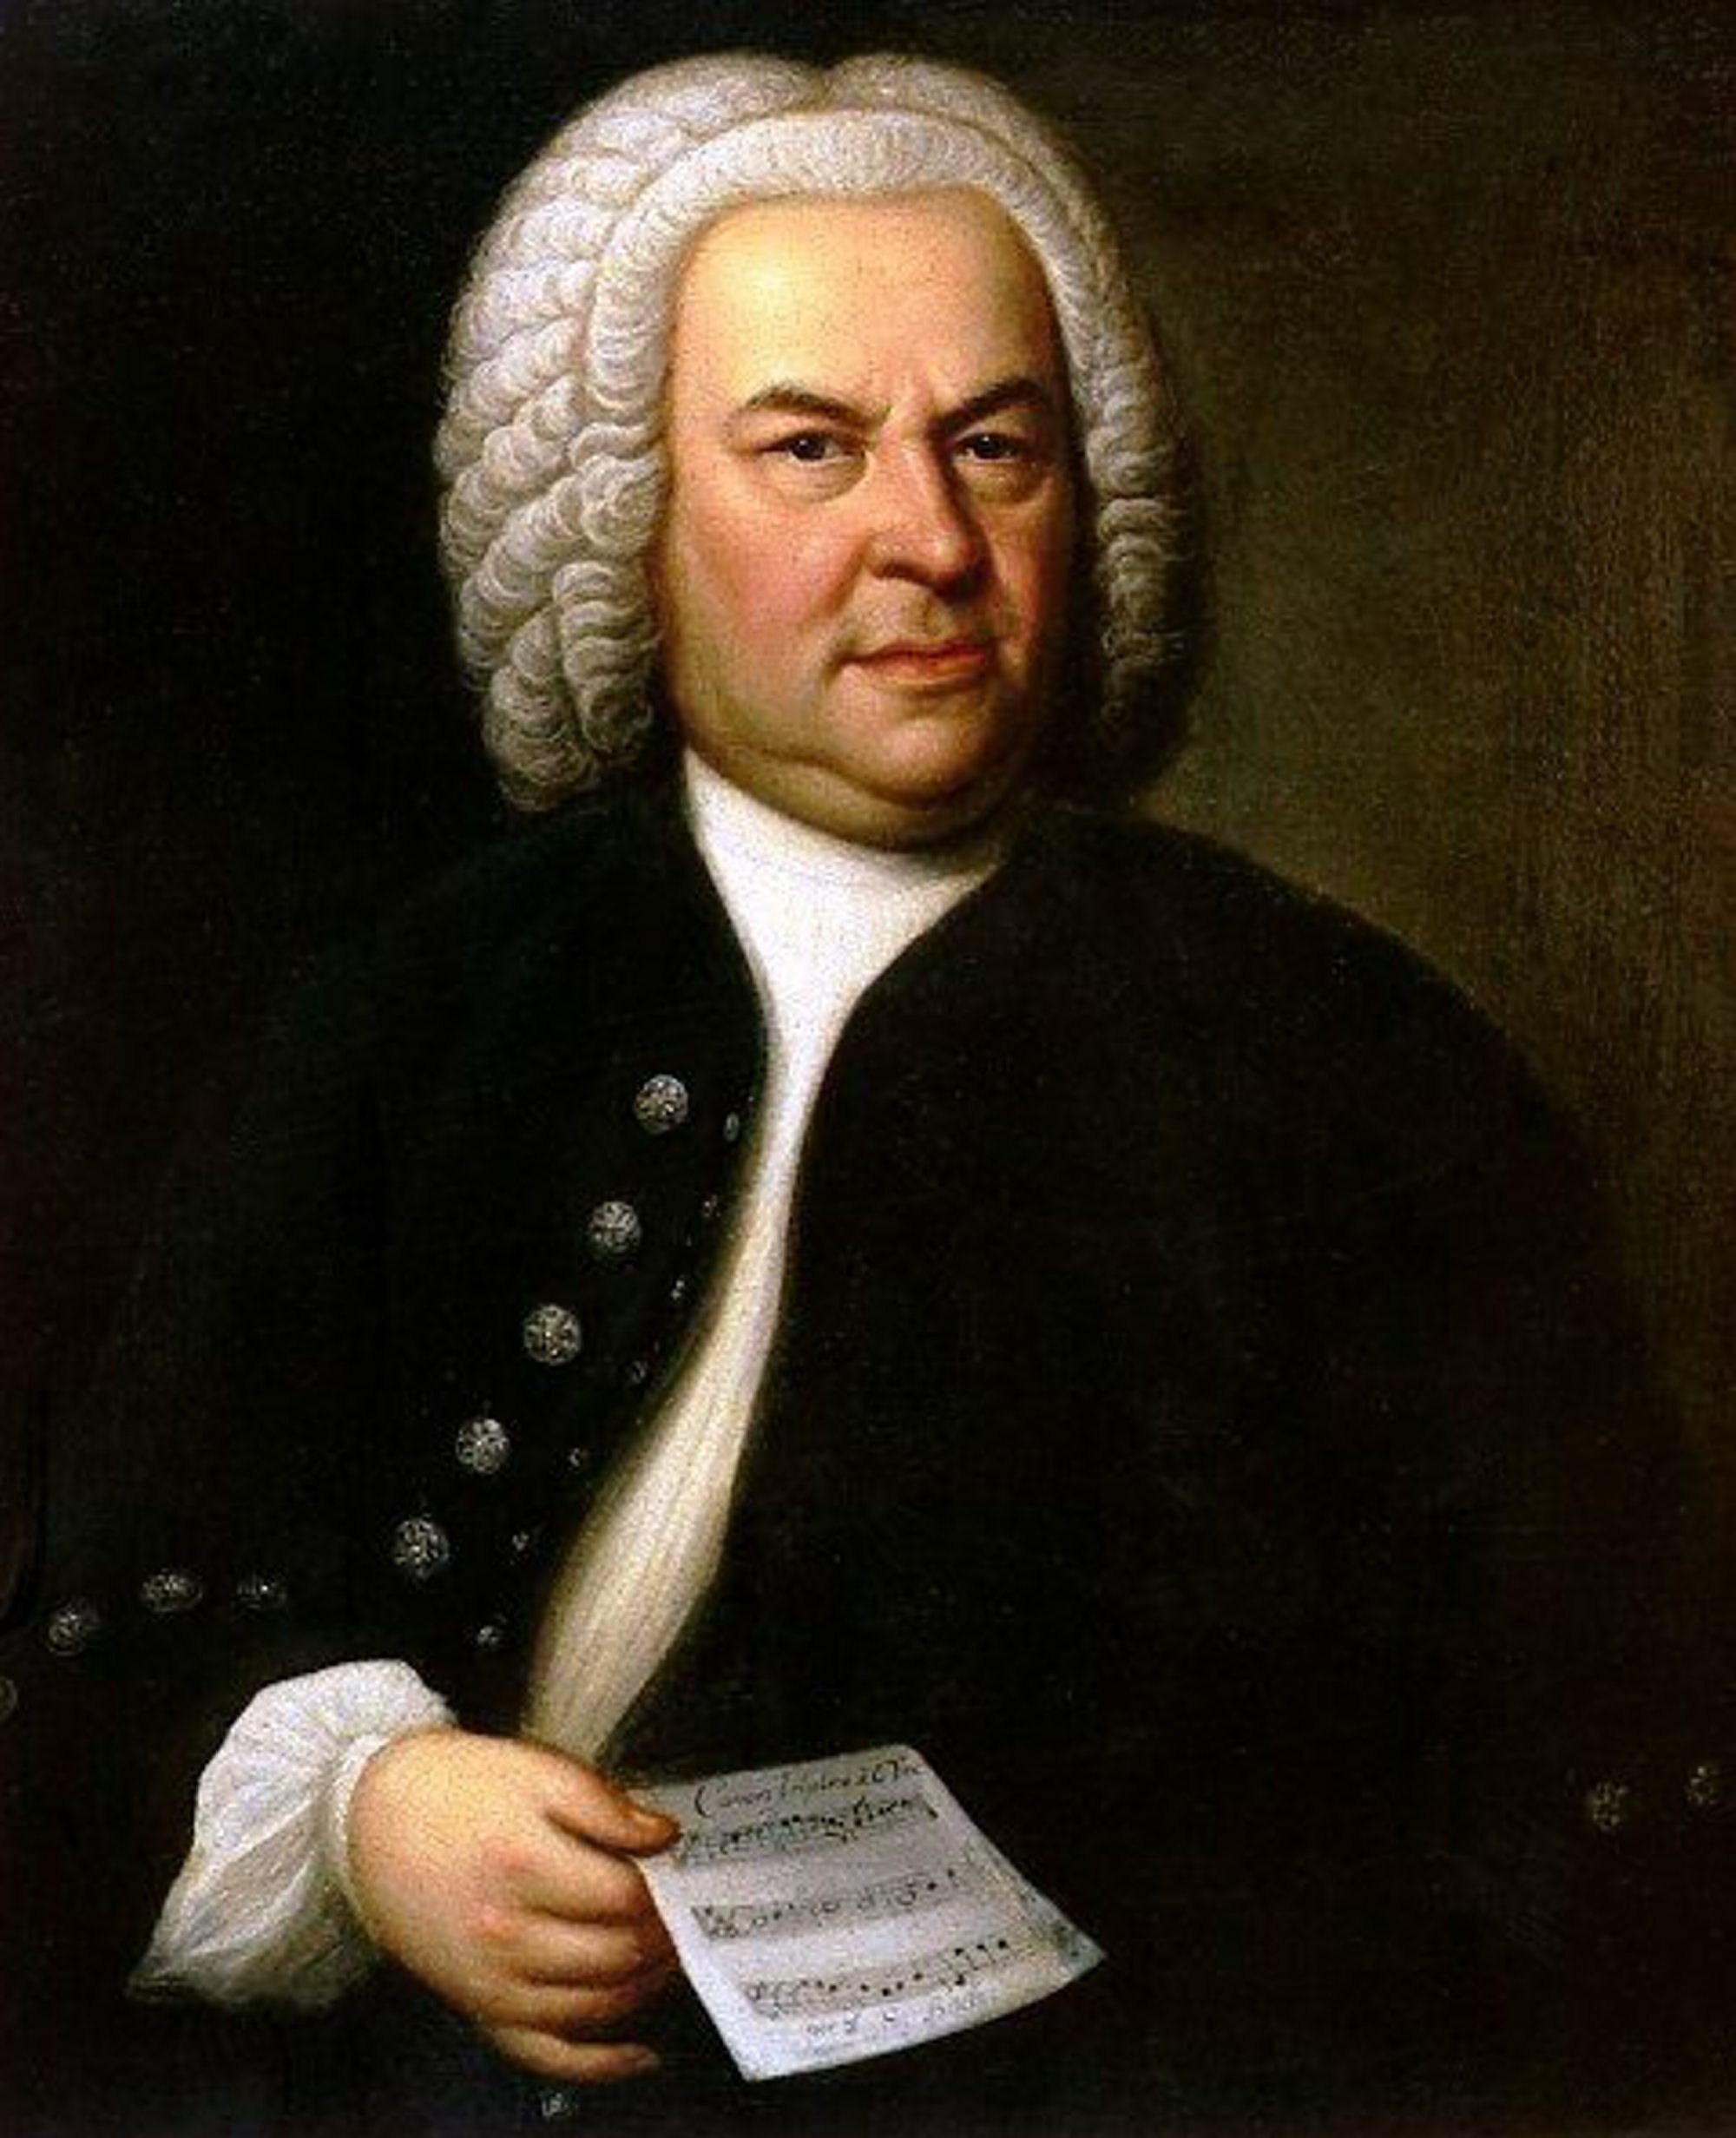 Bach duver videre